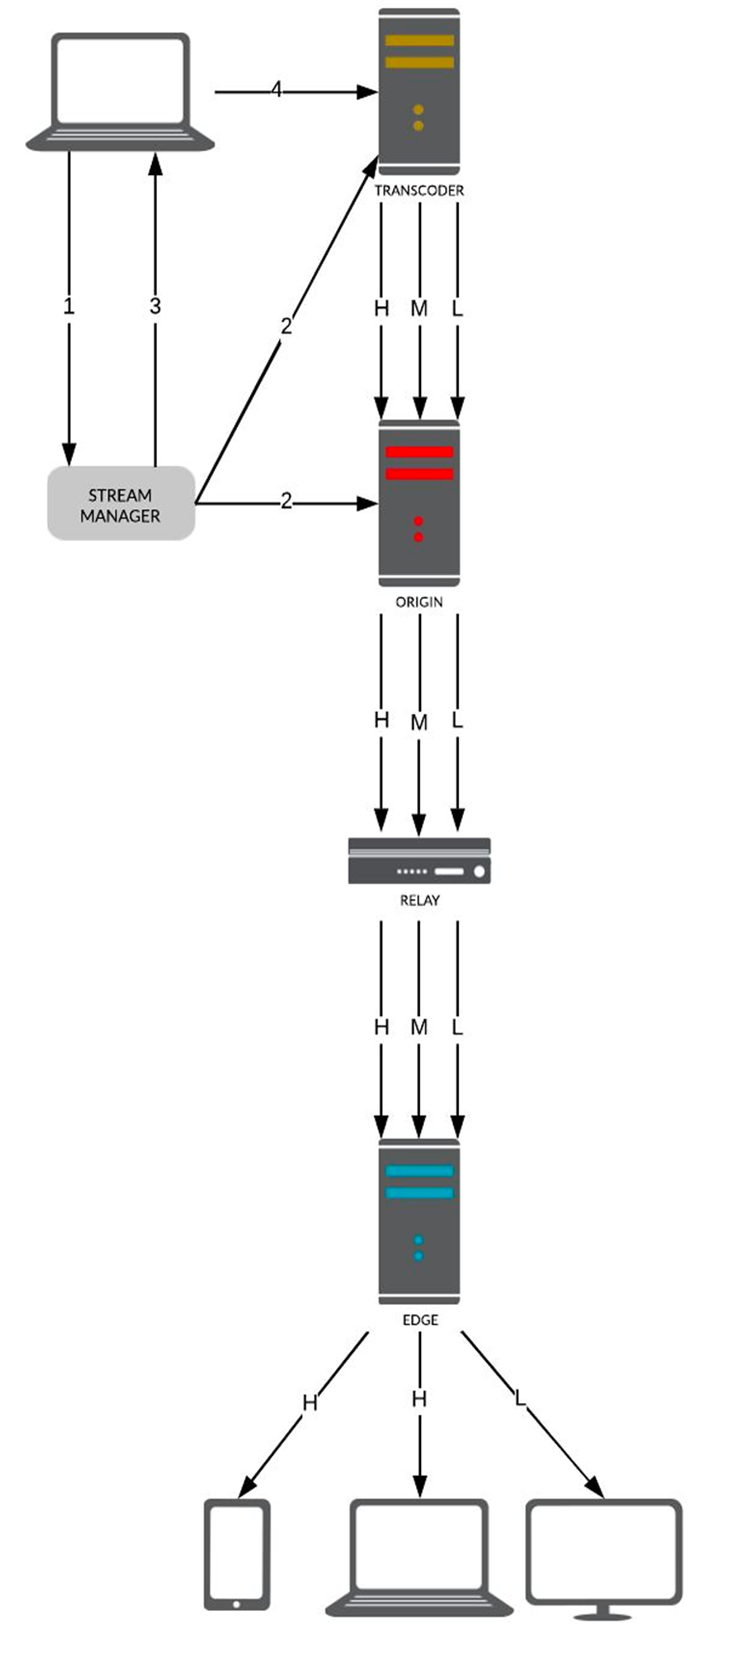 トランスコーダーサーバーを利用して同一ストリームの複数バージョンを生成する場合のシステム概要